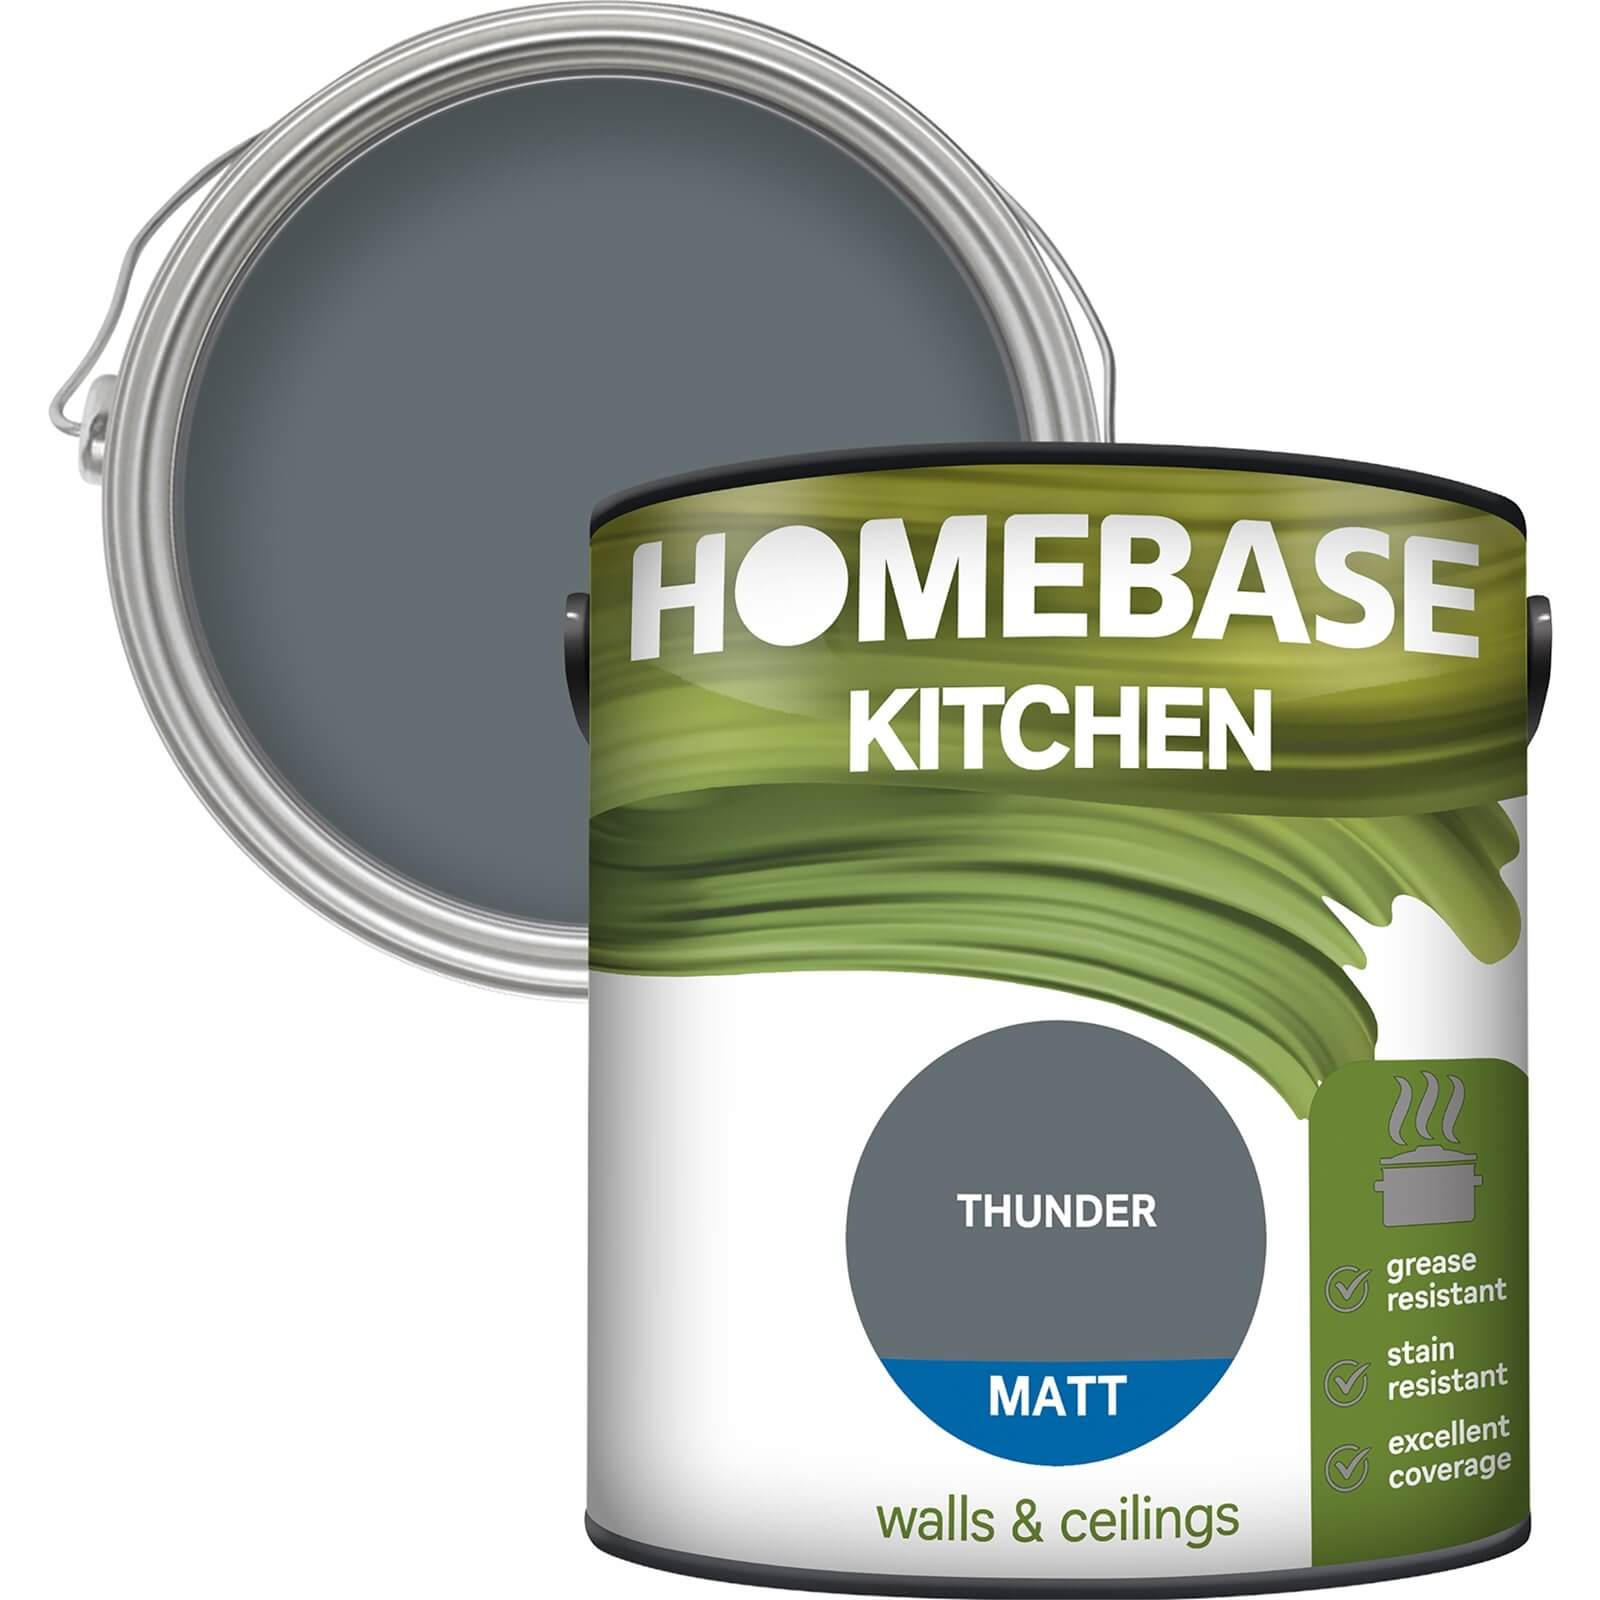 Homebase Kitchen Matt Paint - Thunder 2.5L